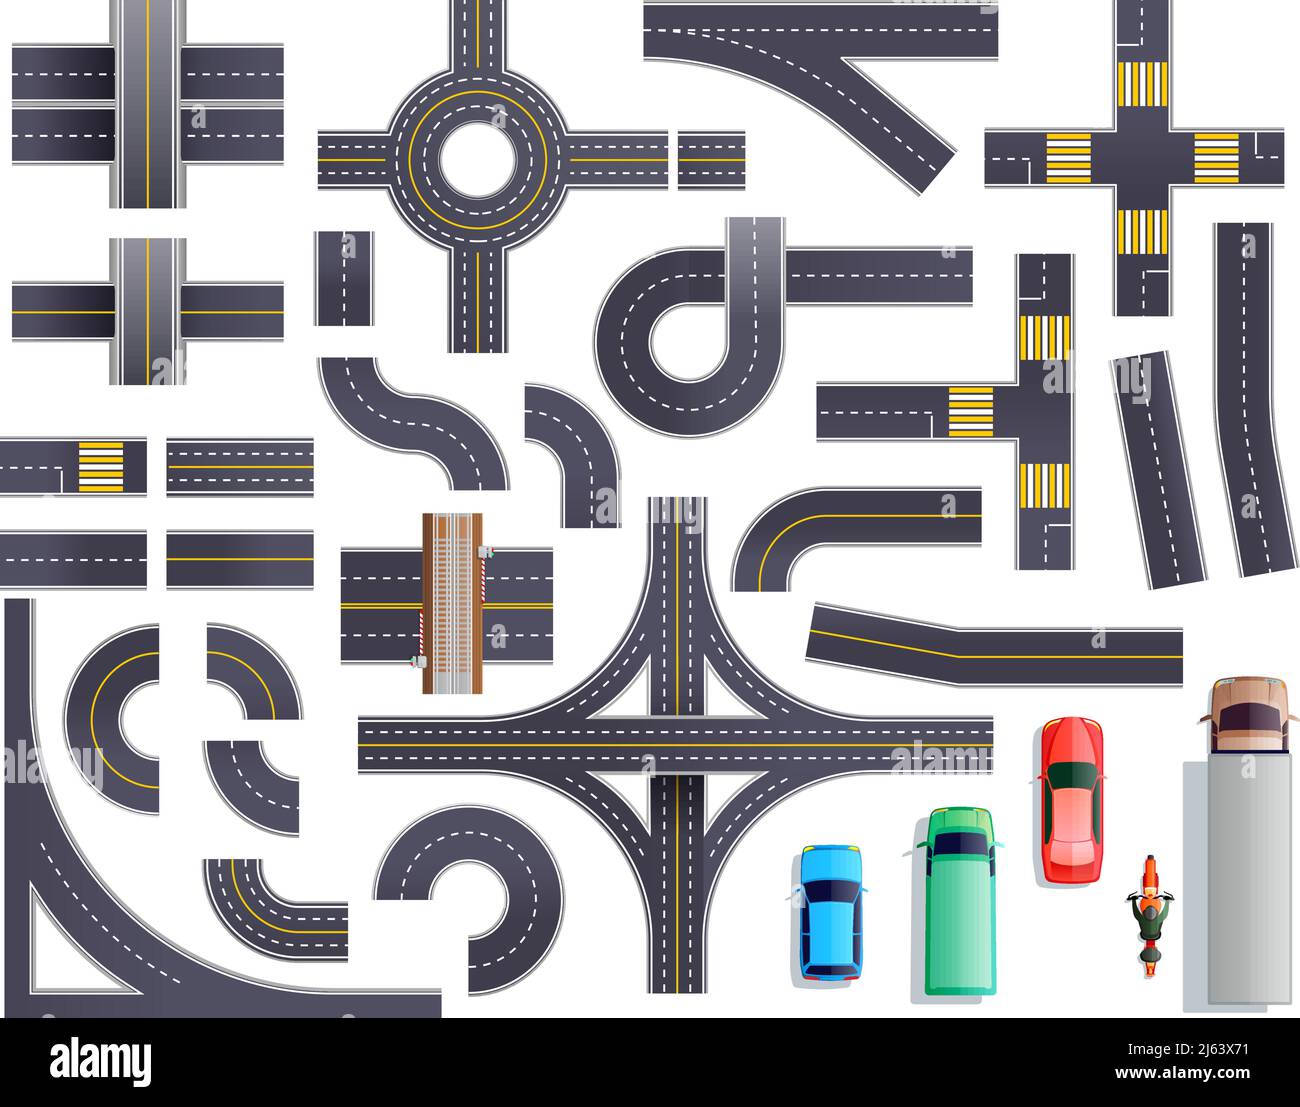 Ensemble de pièces de route avec bord de route et marquage comprenant les intersections, les intersections, les passages pour piétons, les ponts, les véhicules illustration vectorielle isolée Illustration de Vecteur